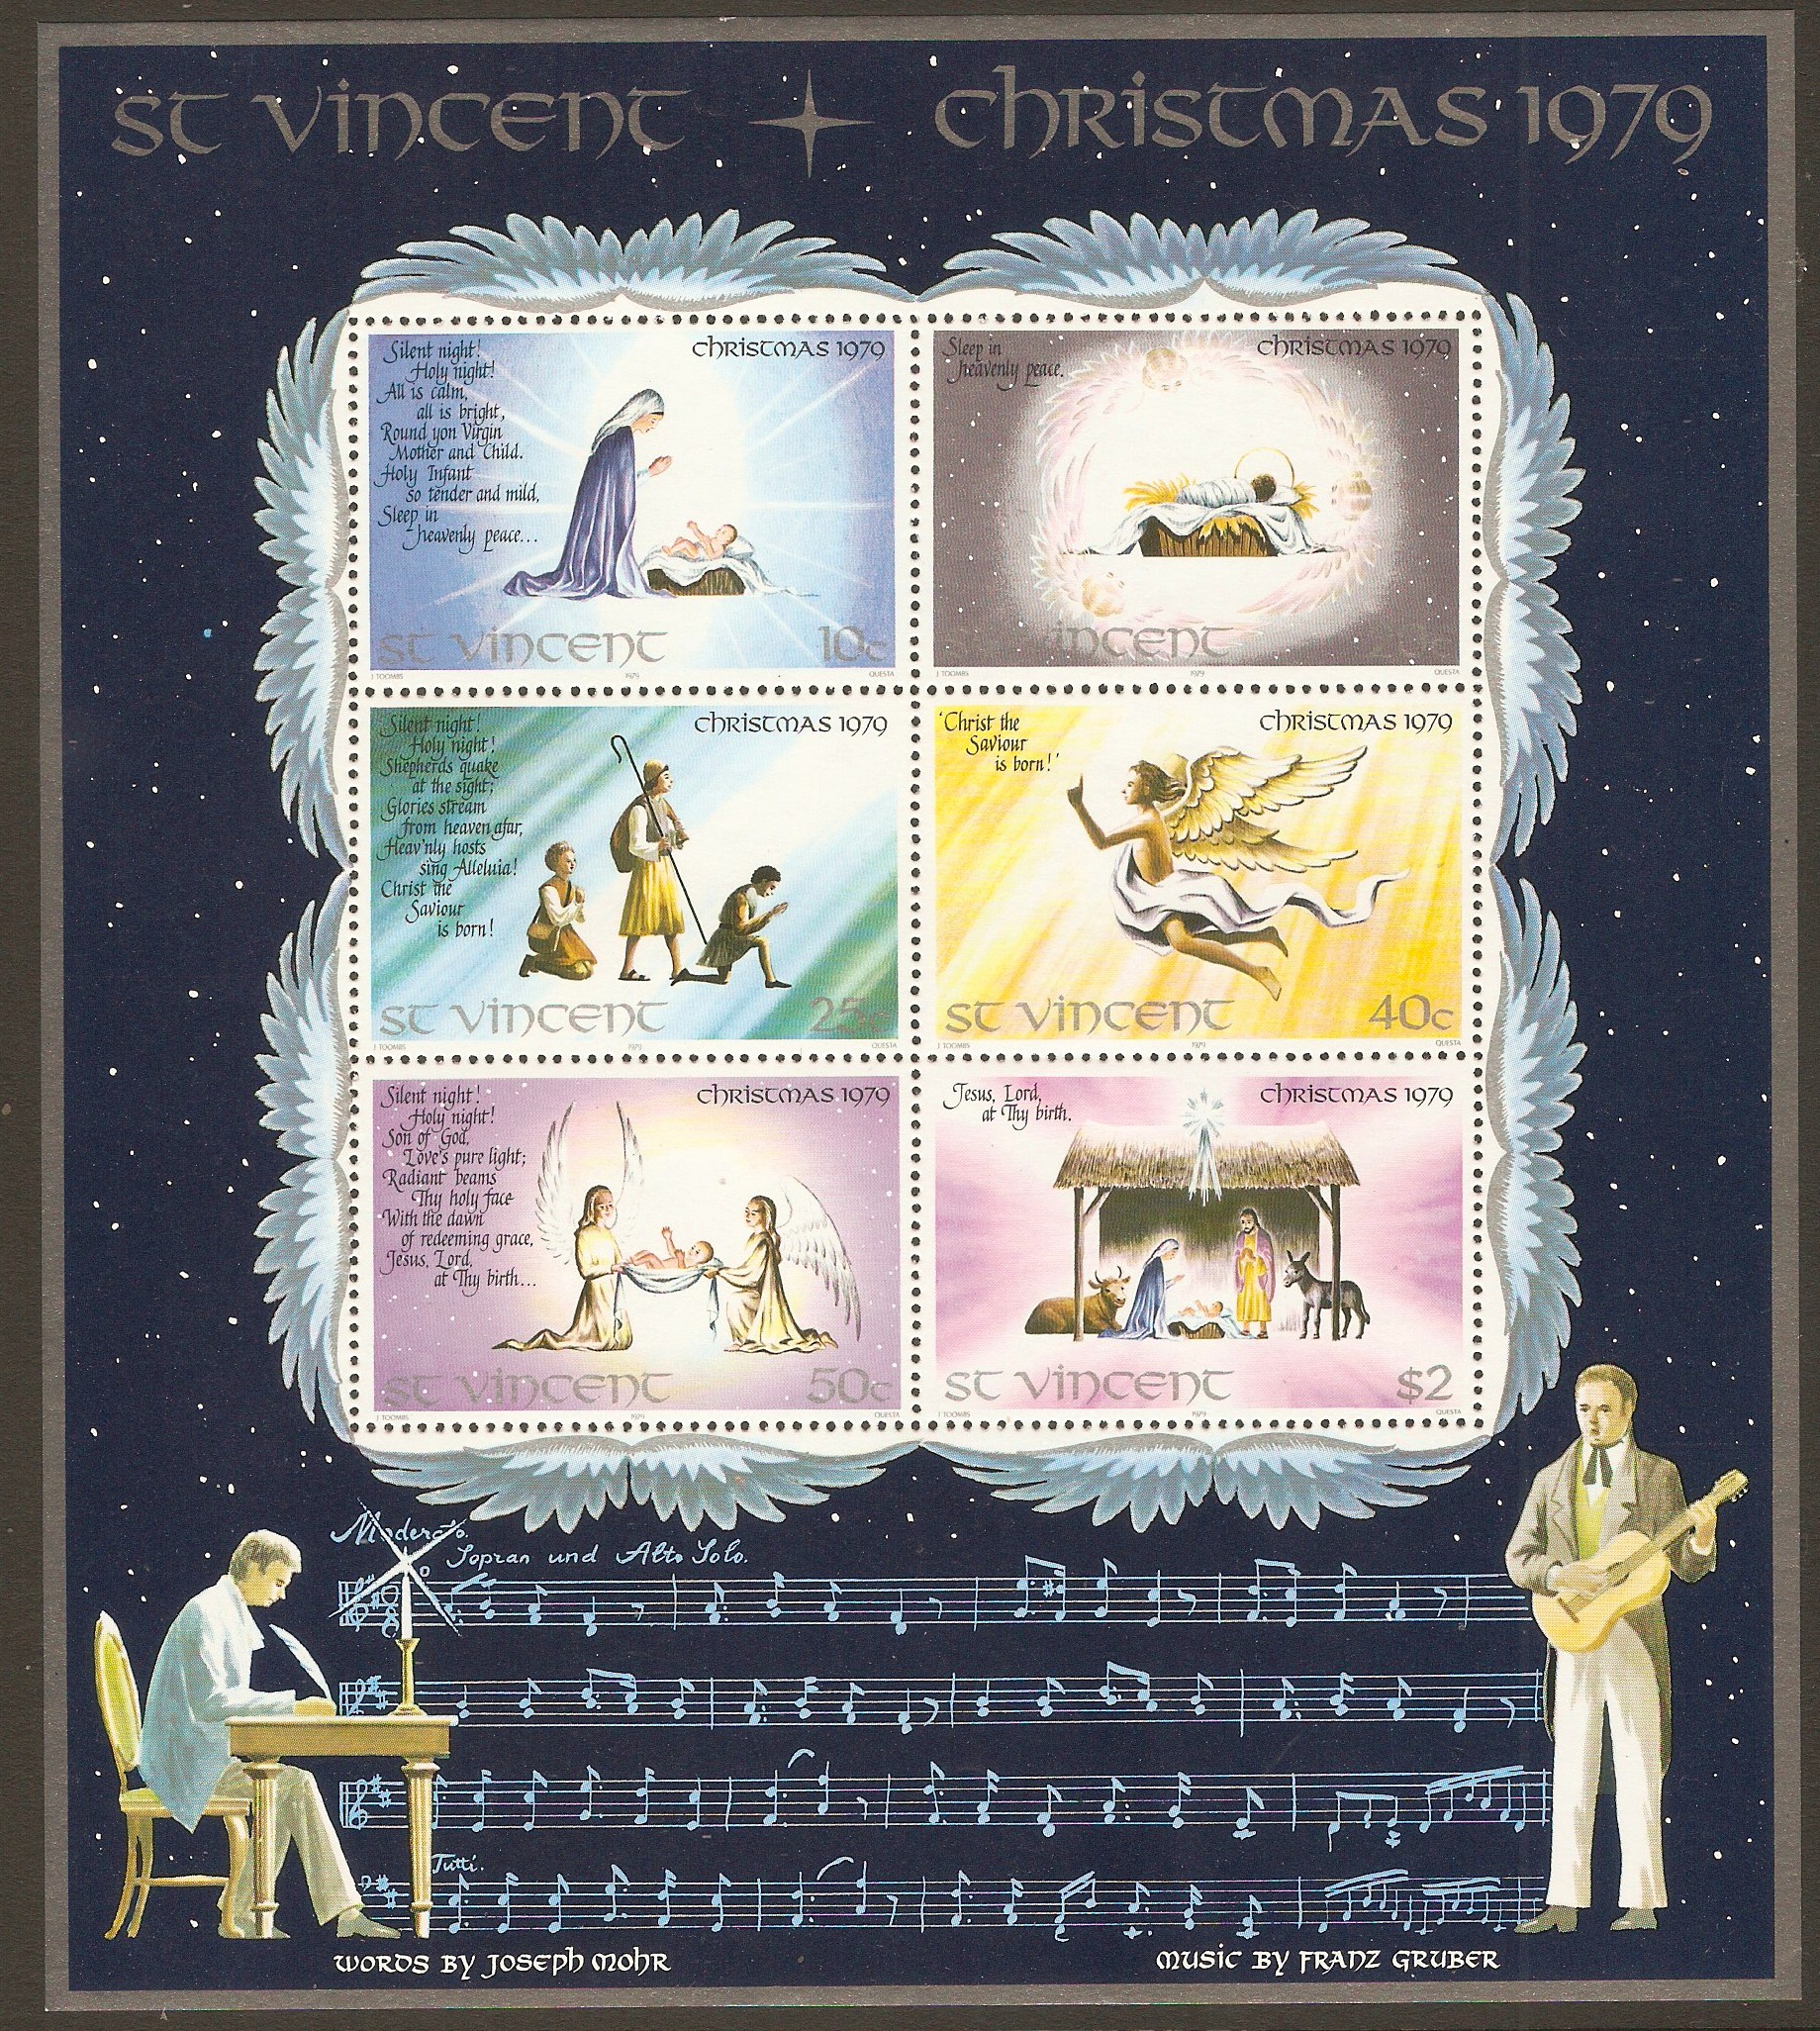 St Vincent 1979 Christmas sheet. SGMS627.